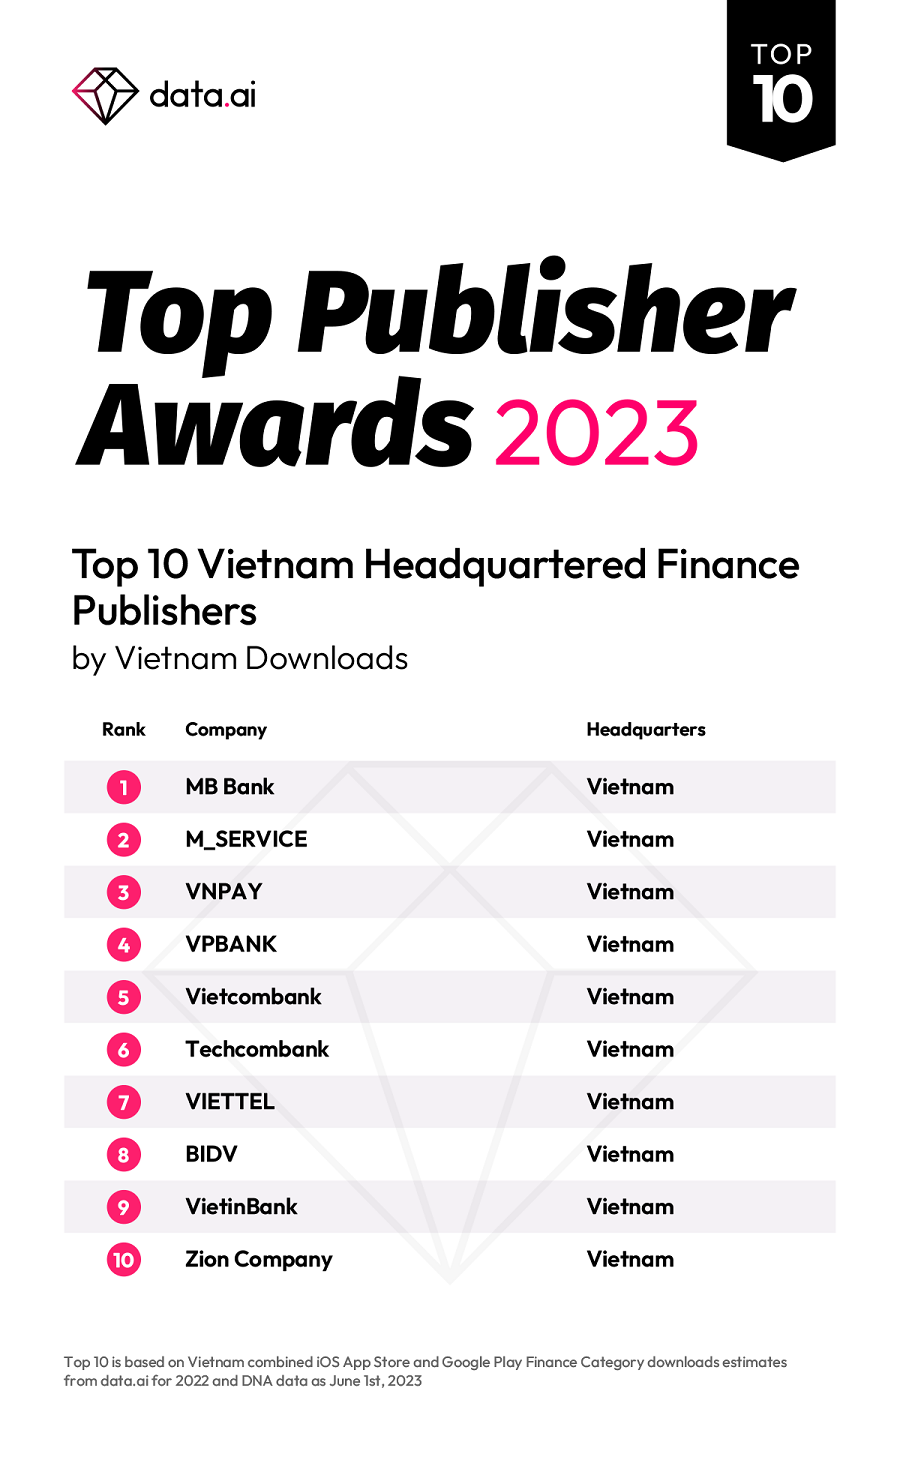 Bảng xếp hạng top 10 nhà phát hành ứng dụng tài chính tại Việt Nam năm 2023 theo data.ai.